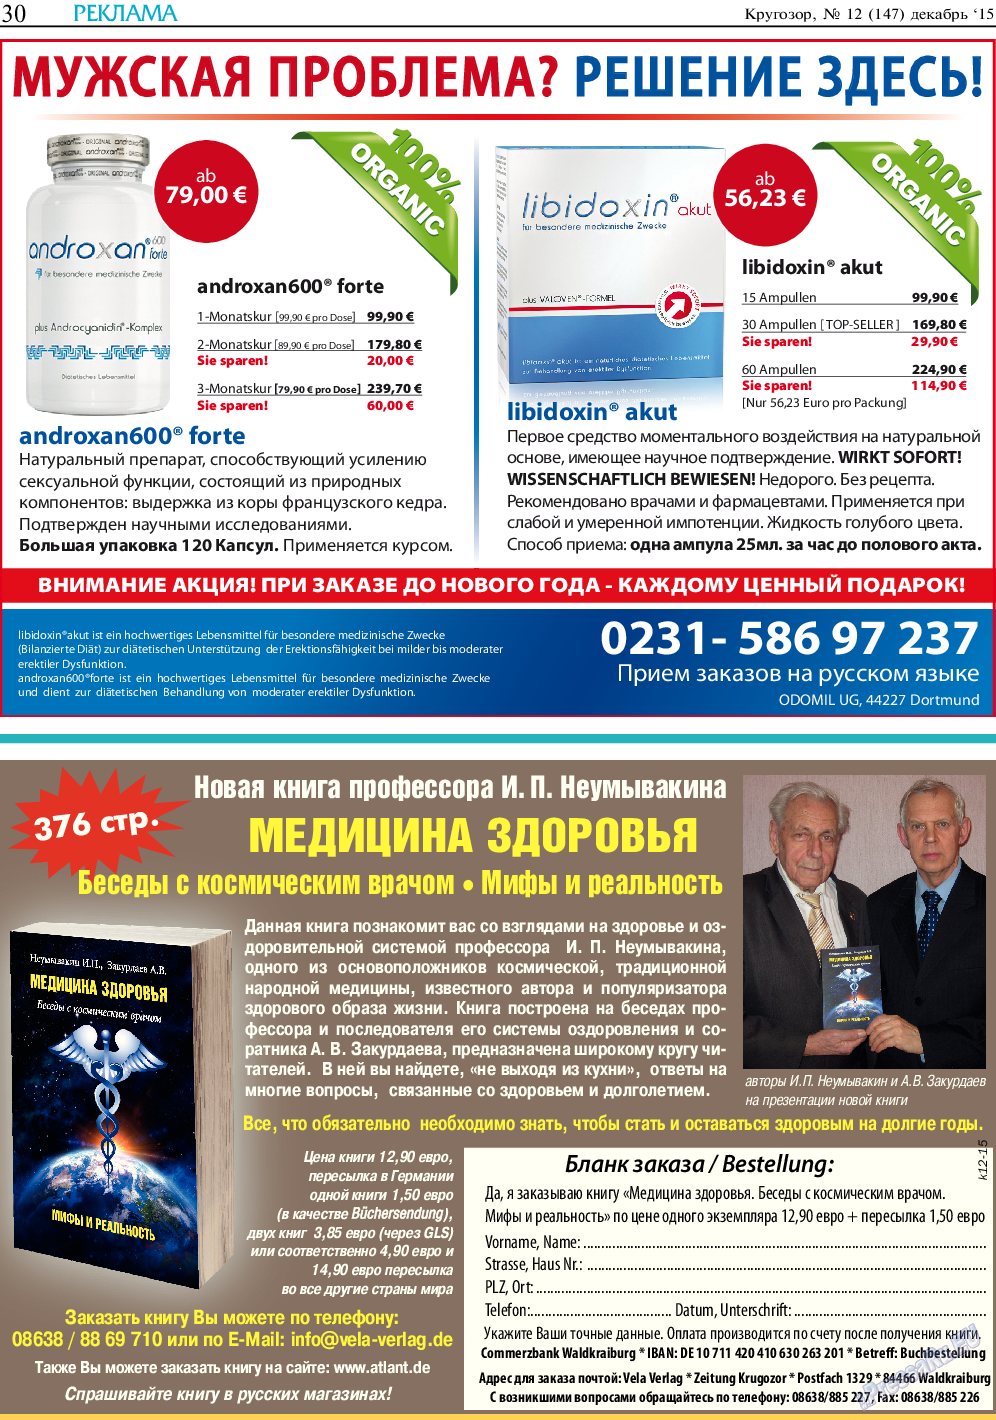 Кругозор, газета. 2015 №12 стр.30